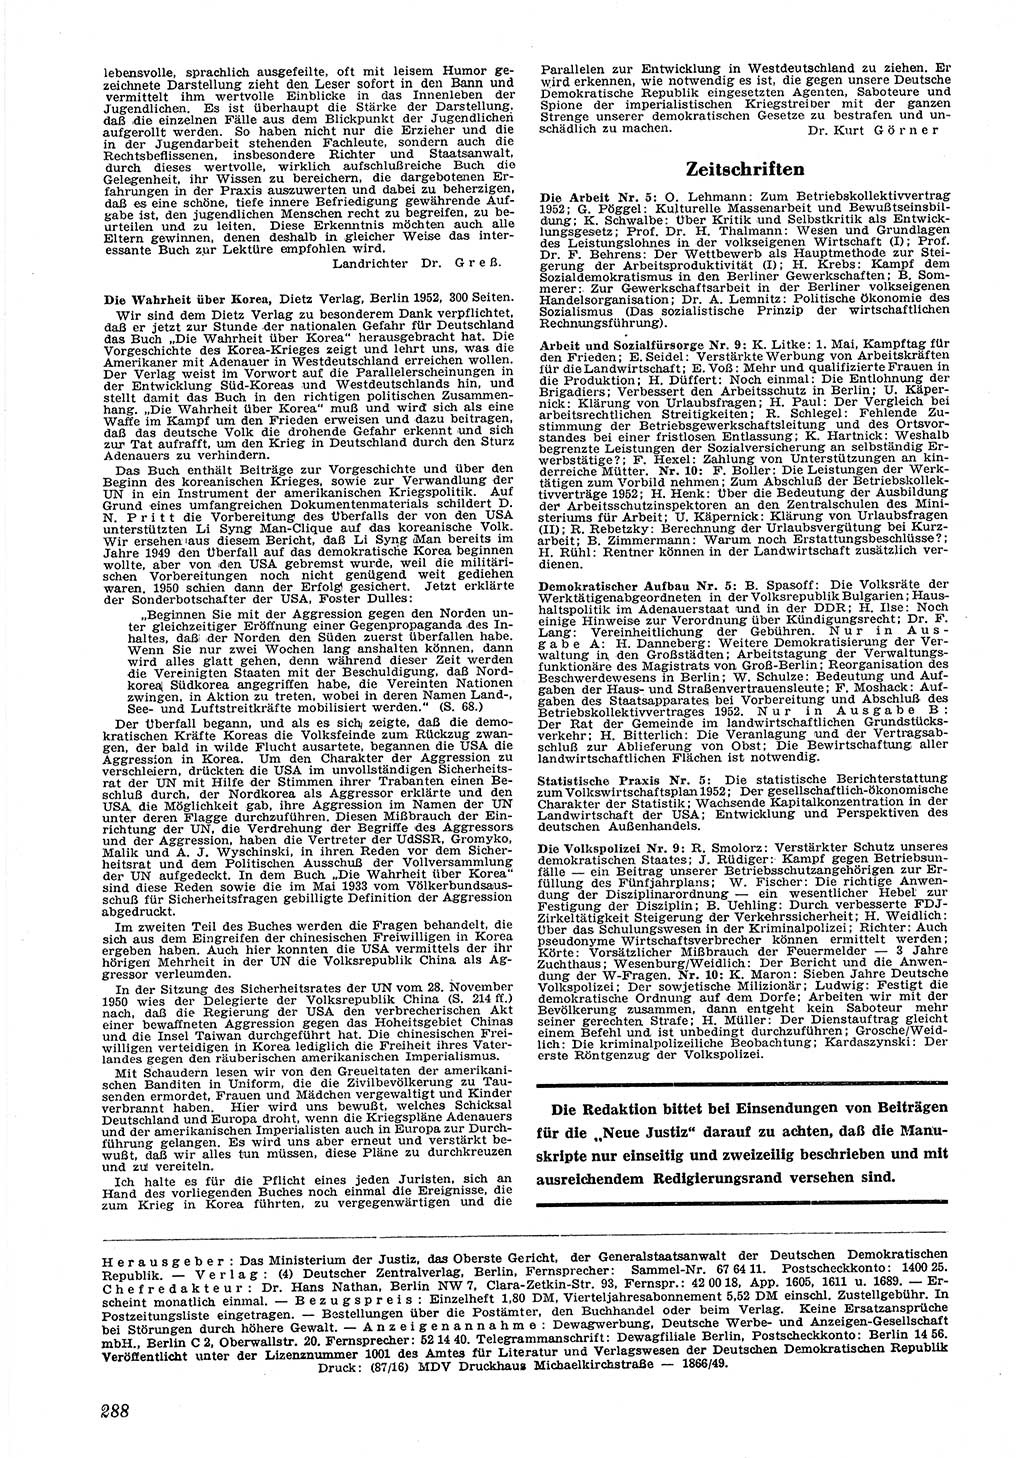 Neue Justiz (NJ), Zeitschrift für Recht und Rechtswissenschaft [Deutsche Demokratische Republik (DDR)], 6. Jahrgang 1952, Seite 288 (NJ DDR 1952, S. 288)